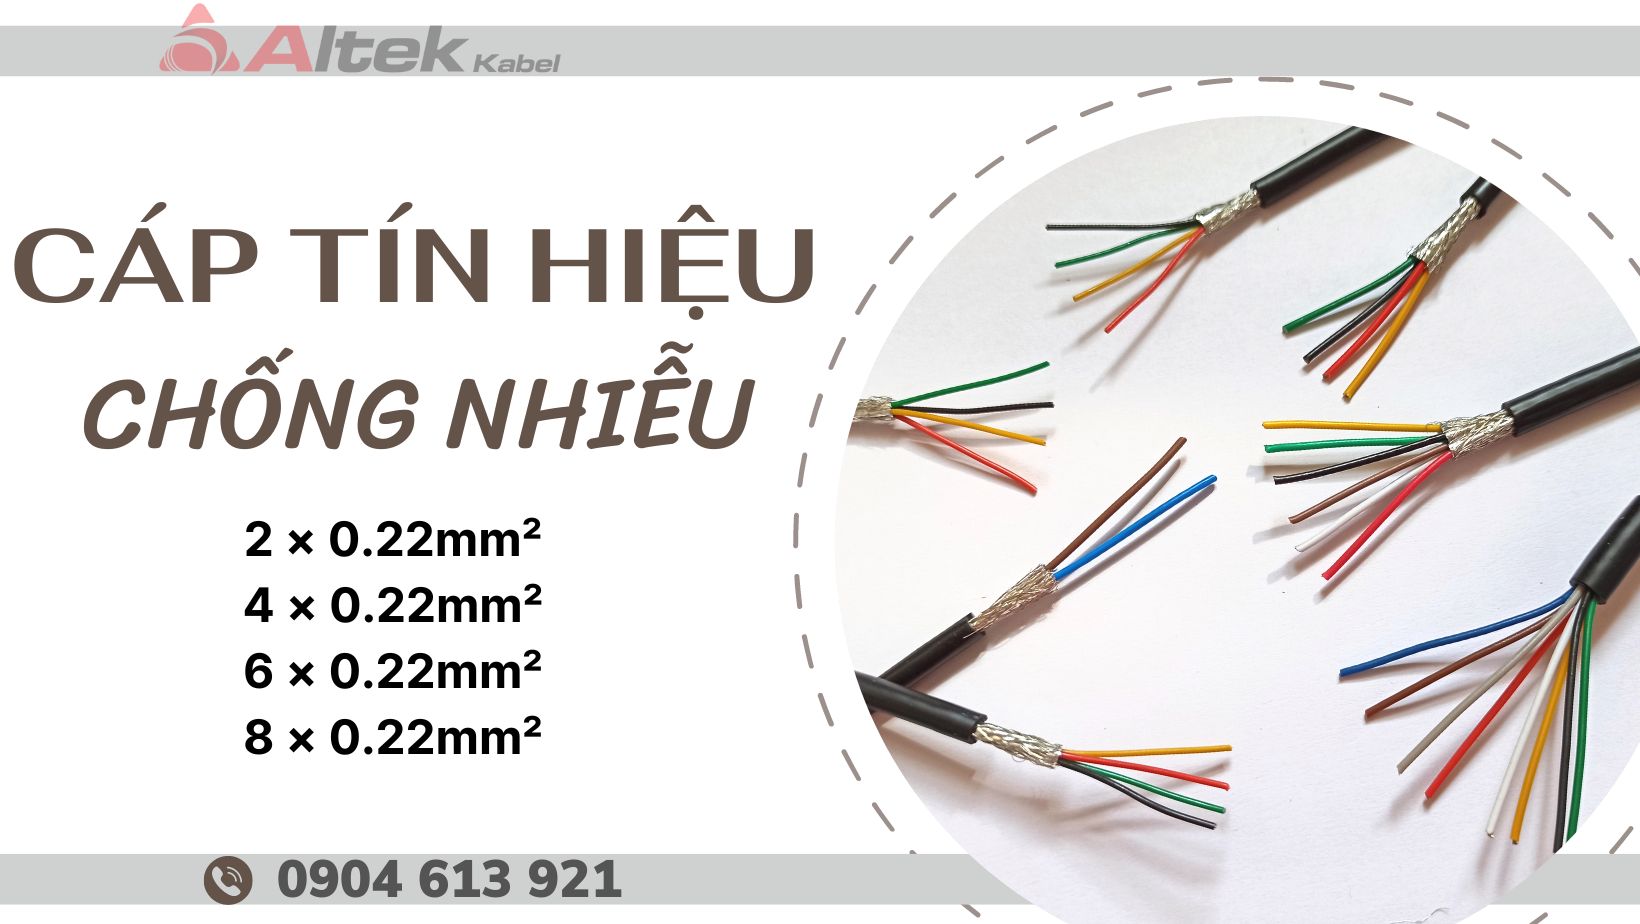 Cáp tín hiệu chống nhiễu Altek kabel tiêu chuẩn châu Âu